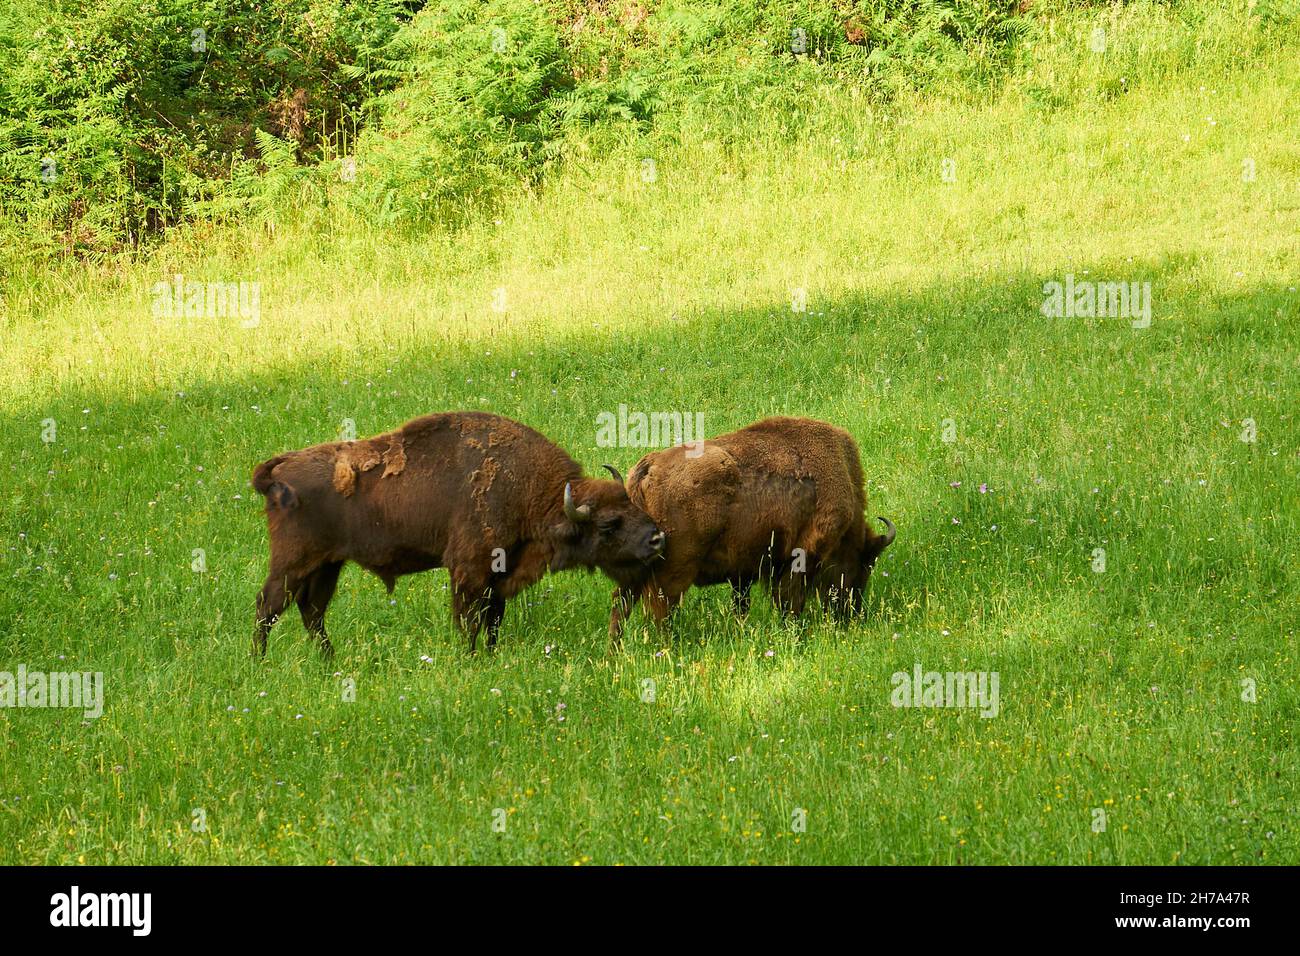 Einige europäische Bisons (Bison bonasus), genannt Lipión und Pipa, grasen in ihrem Gehege im prähistorischen Park von Teverga (Asturien, Spanien) Stockfoto